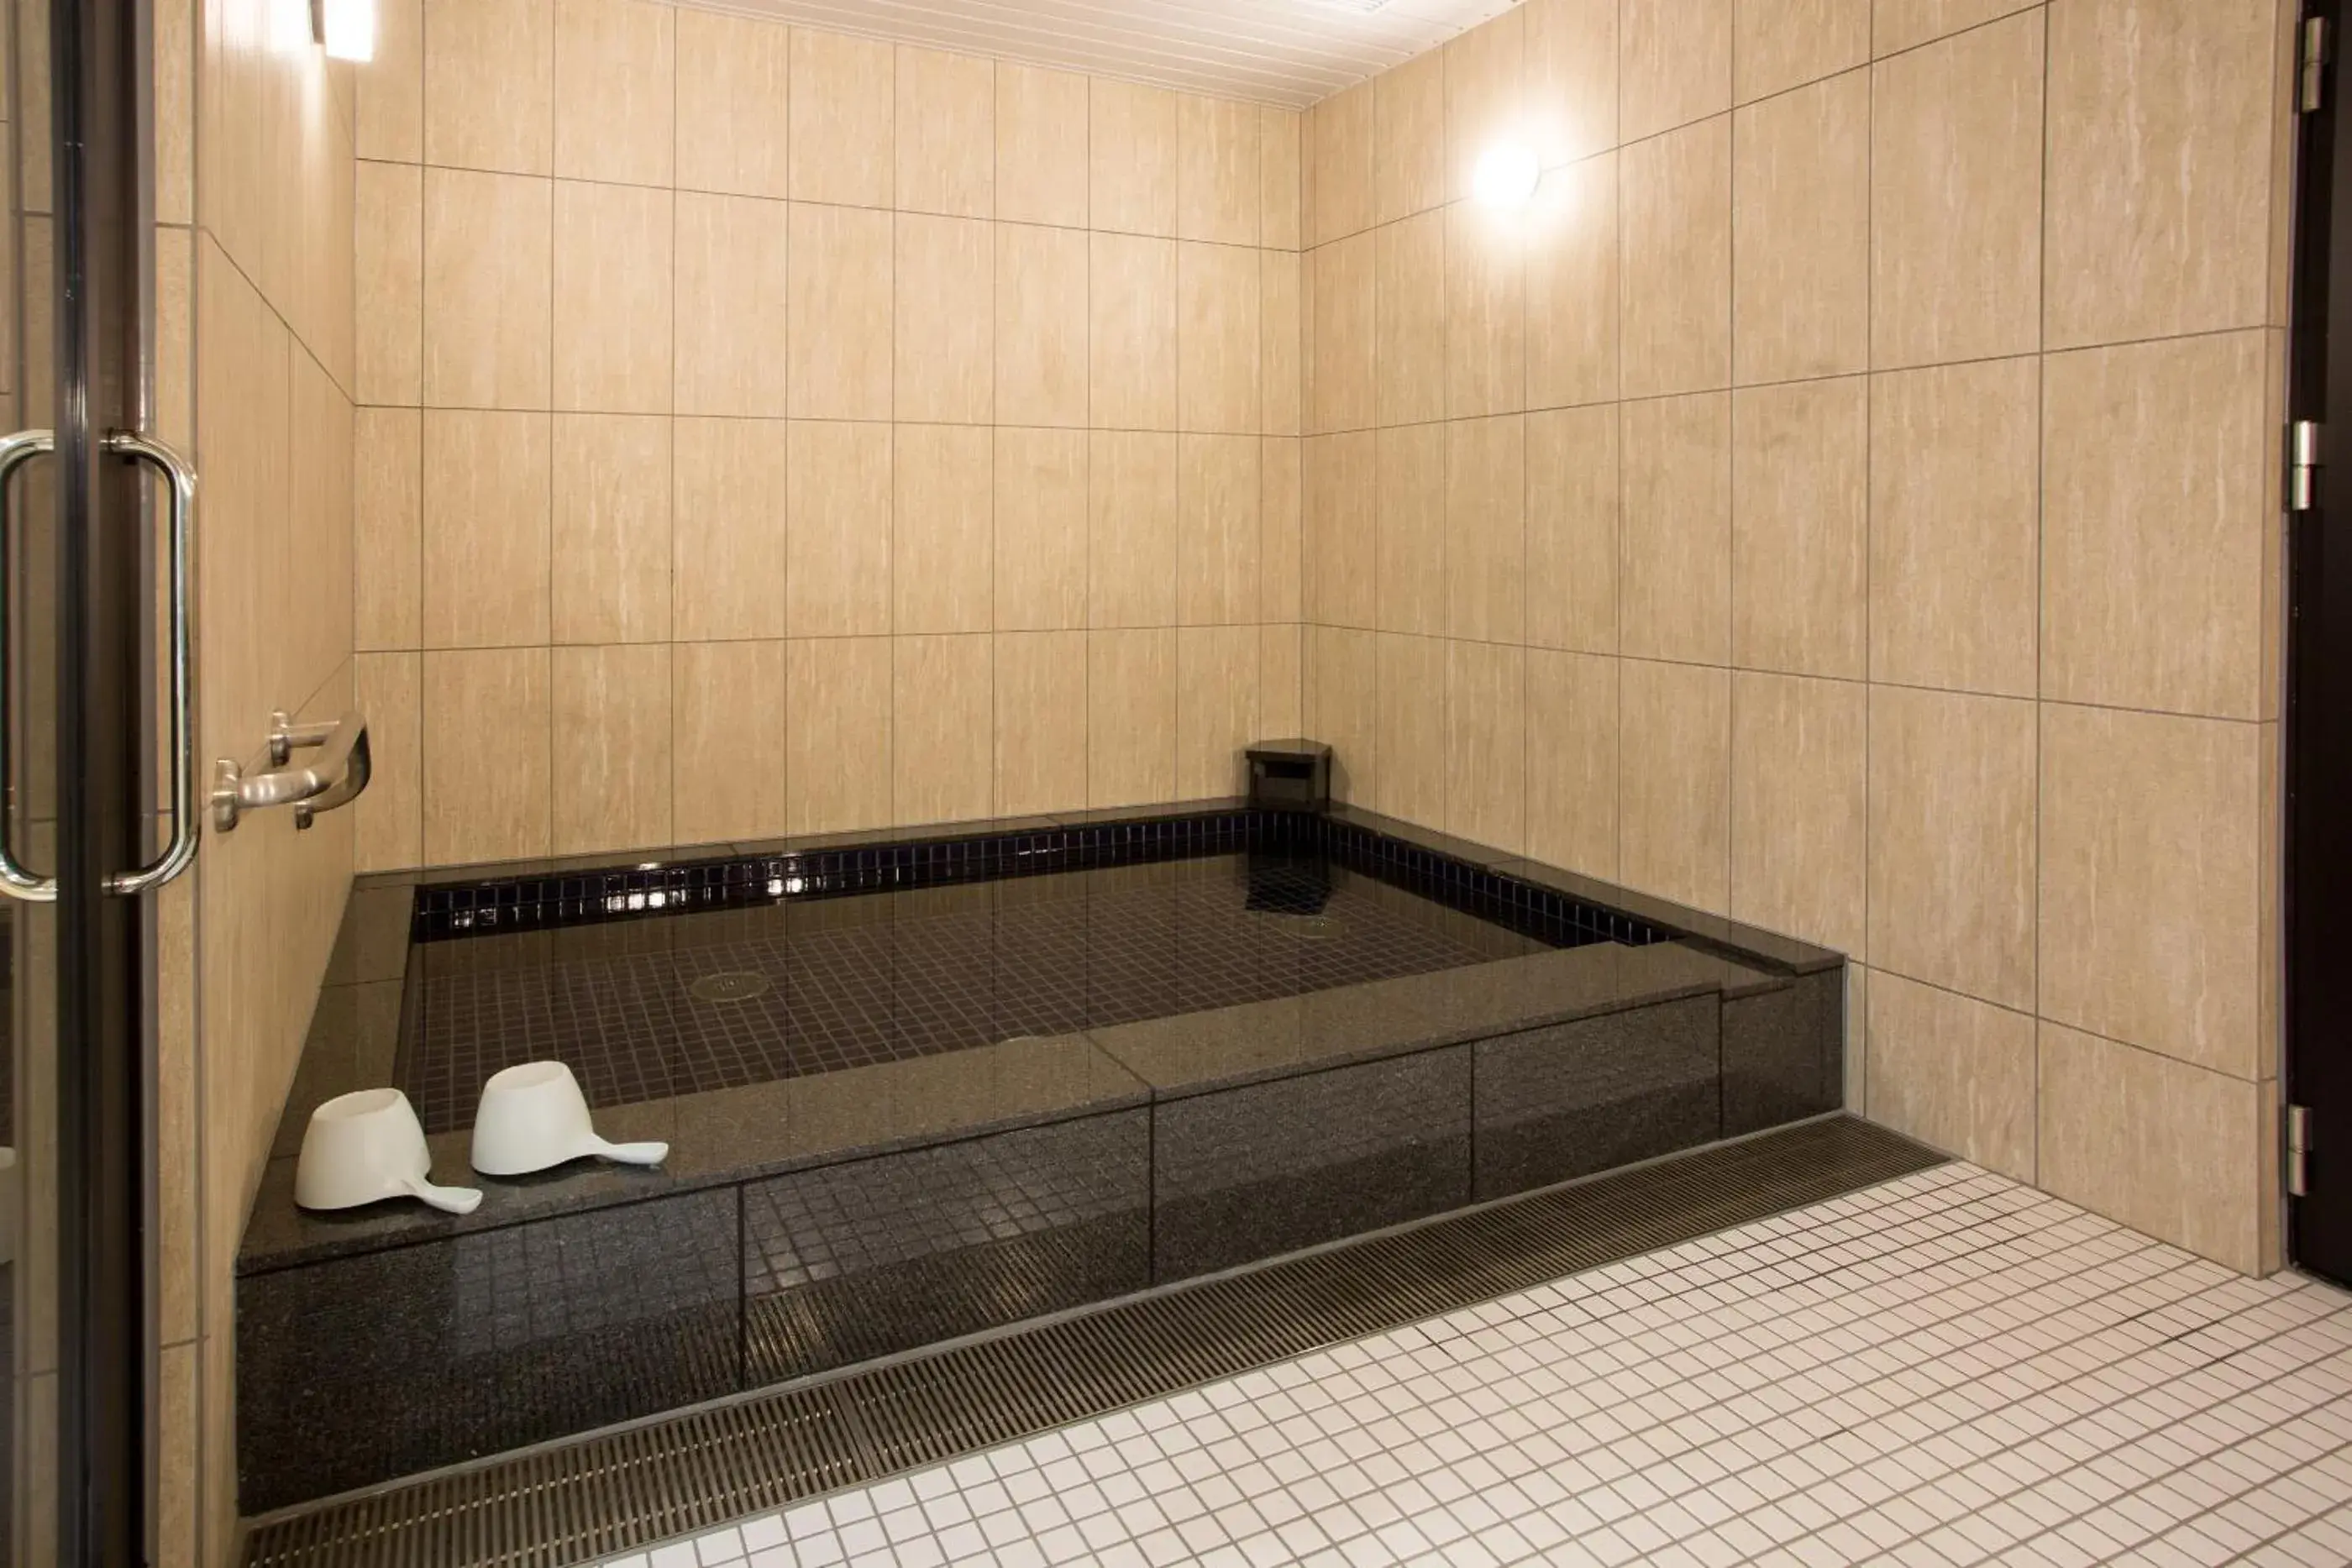 Public Bath, Bathroom in Kyonoyado Kiyomizu Gojo Kuretakeso